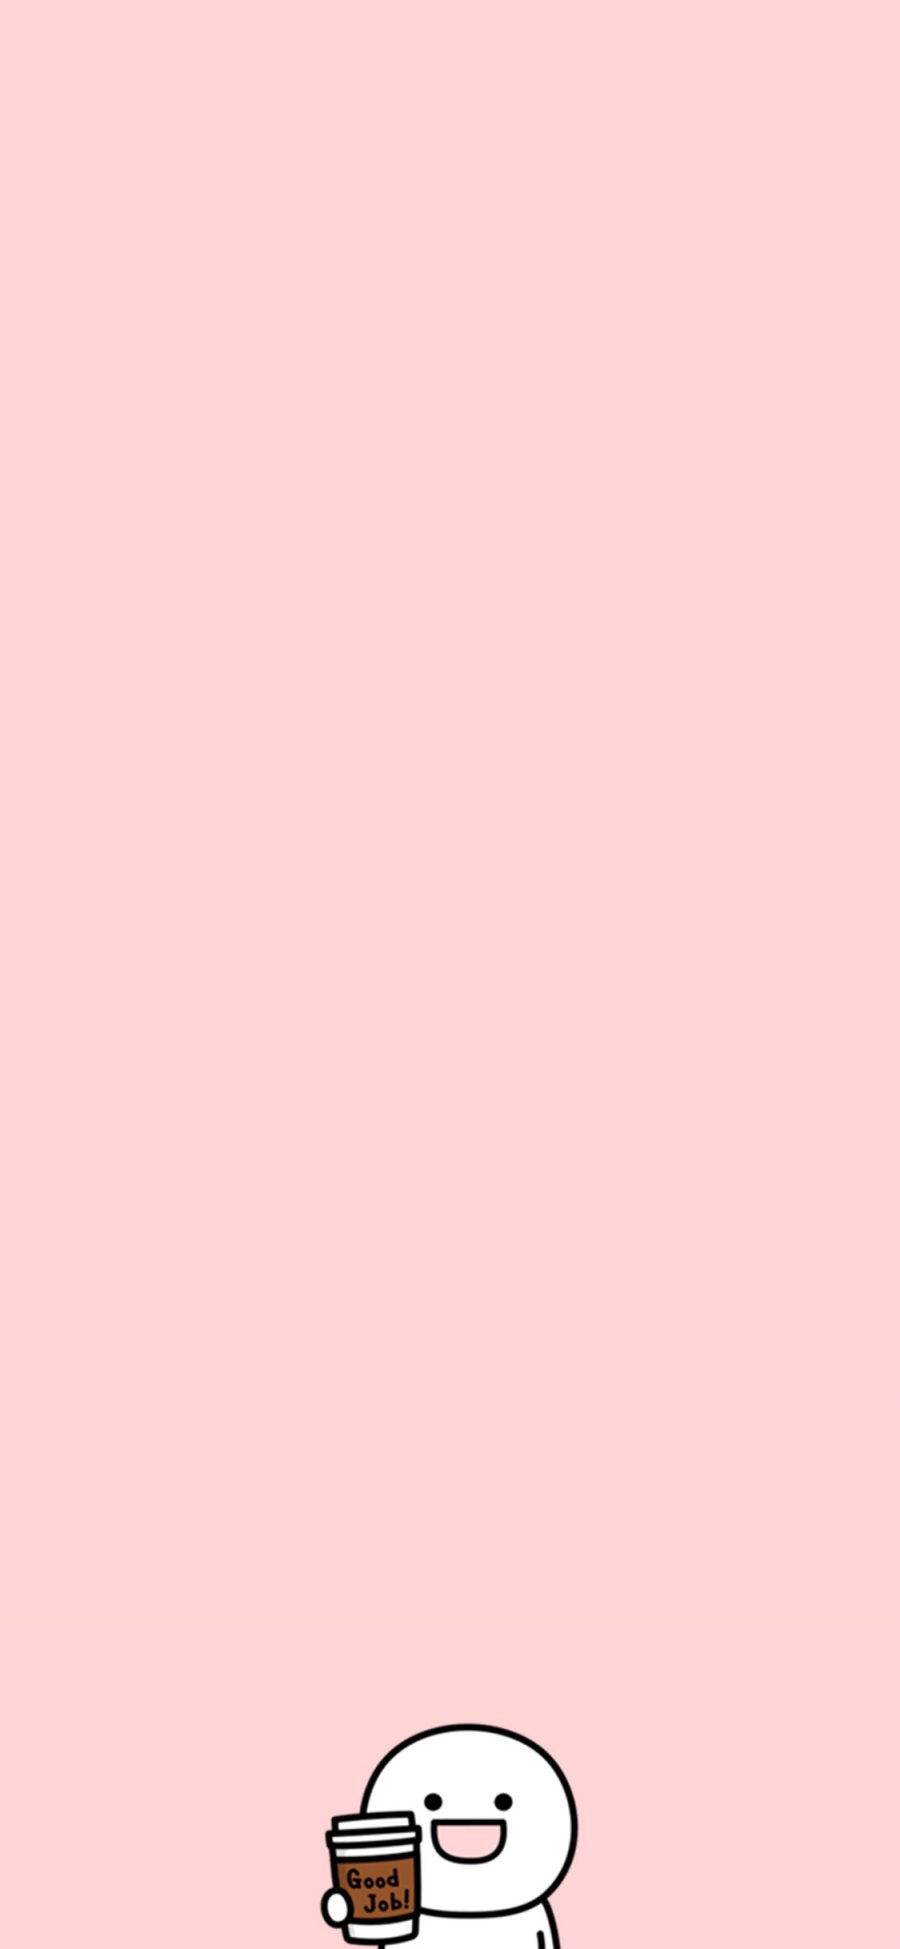 [2436×1125]good job 干得好 小人 可爱 粉色 苹果手机动漫壁纸图片